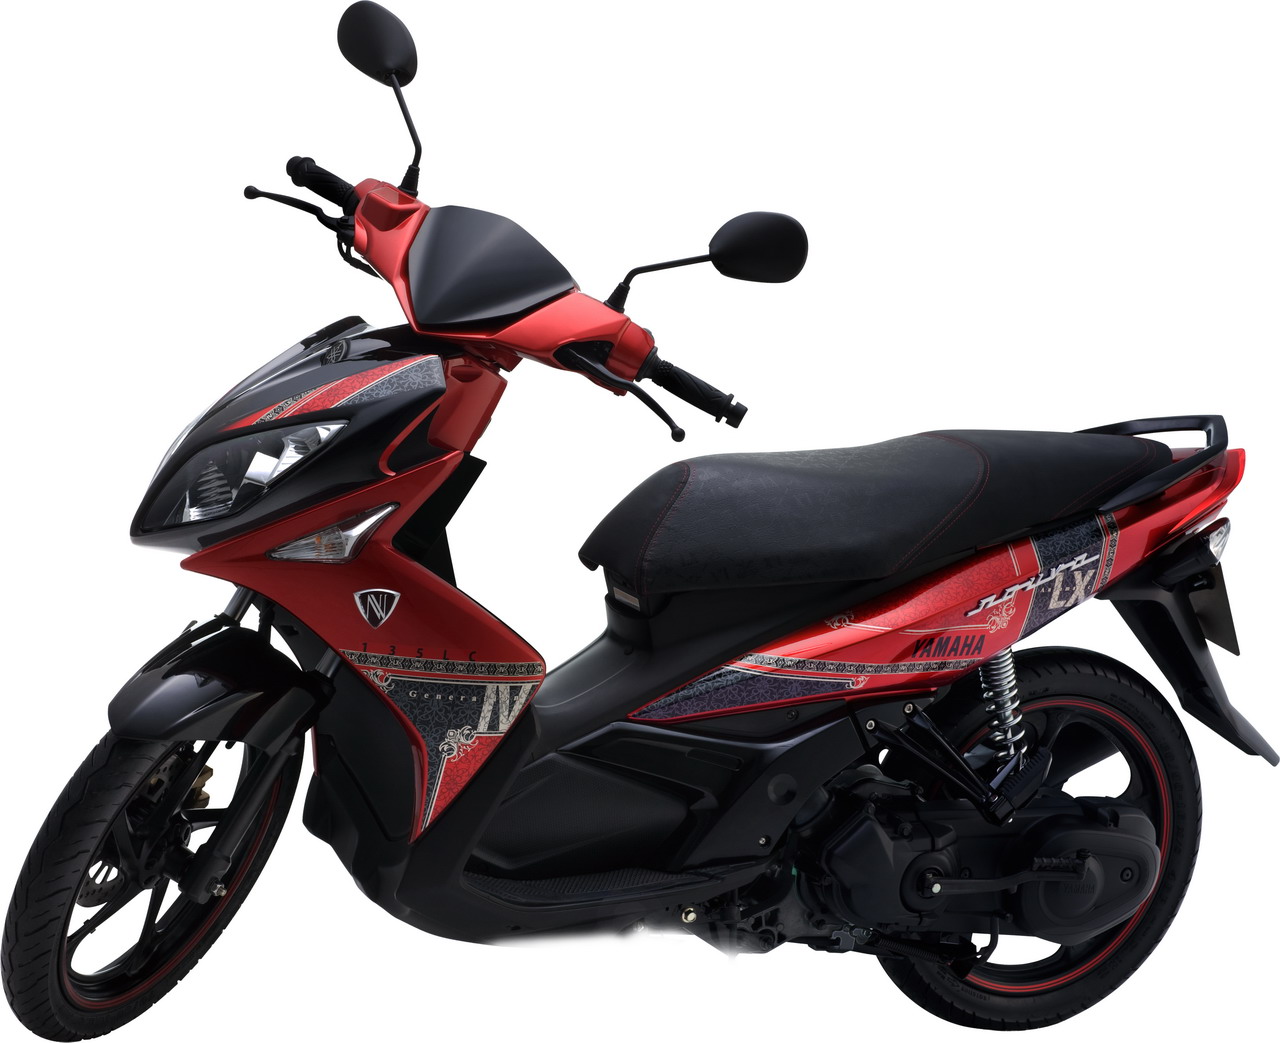 Yamaha Việt Nam bổ sung phiên bản Nouvo LX Limited  Automotive  Thông  tin hình ảnh đánh giá xe ôtô xe máy xe điện  VnEconomy